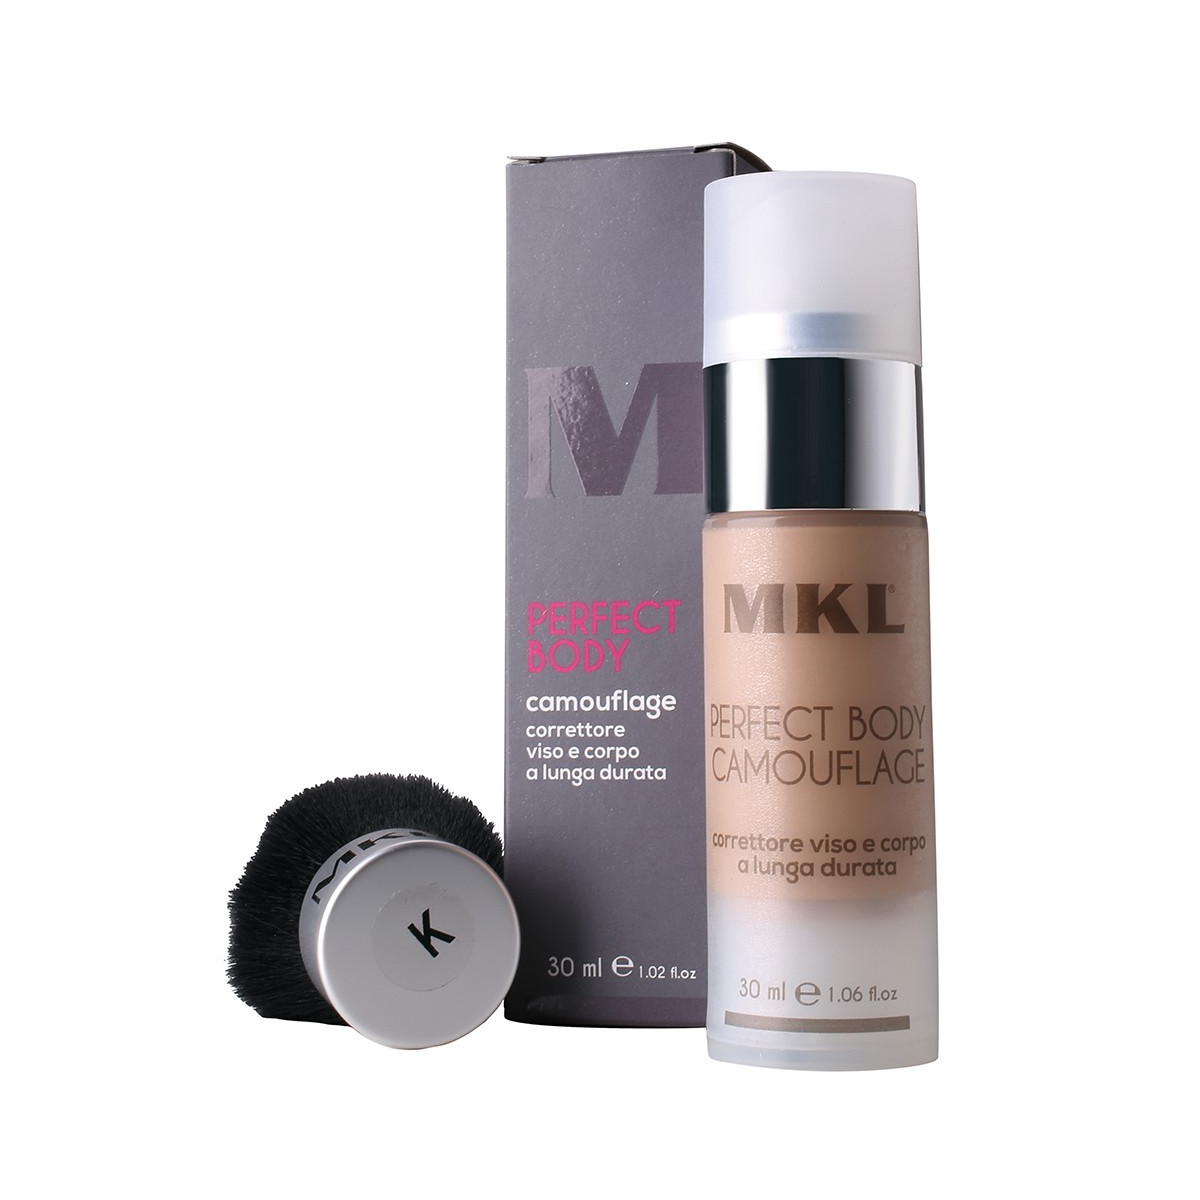 MKL MAKEUP - PERFECT BODY CAMOUFLAGE + PENNELLO K - G3 B (30ml) Correttore viso e corpo